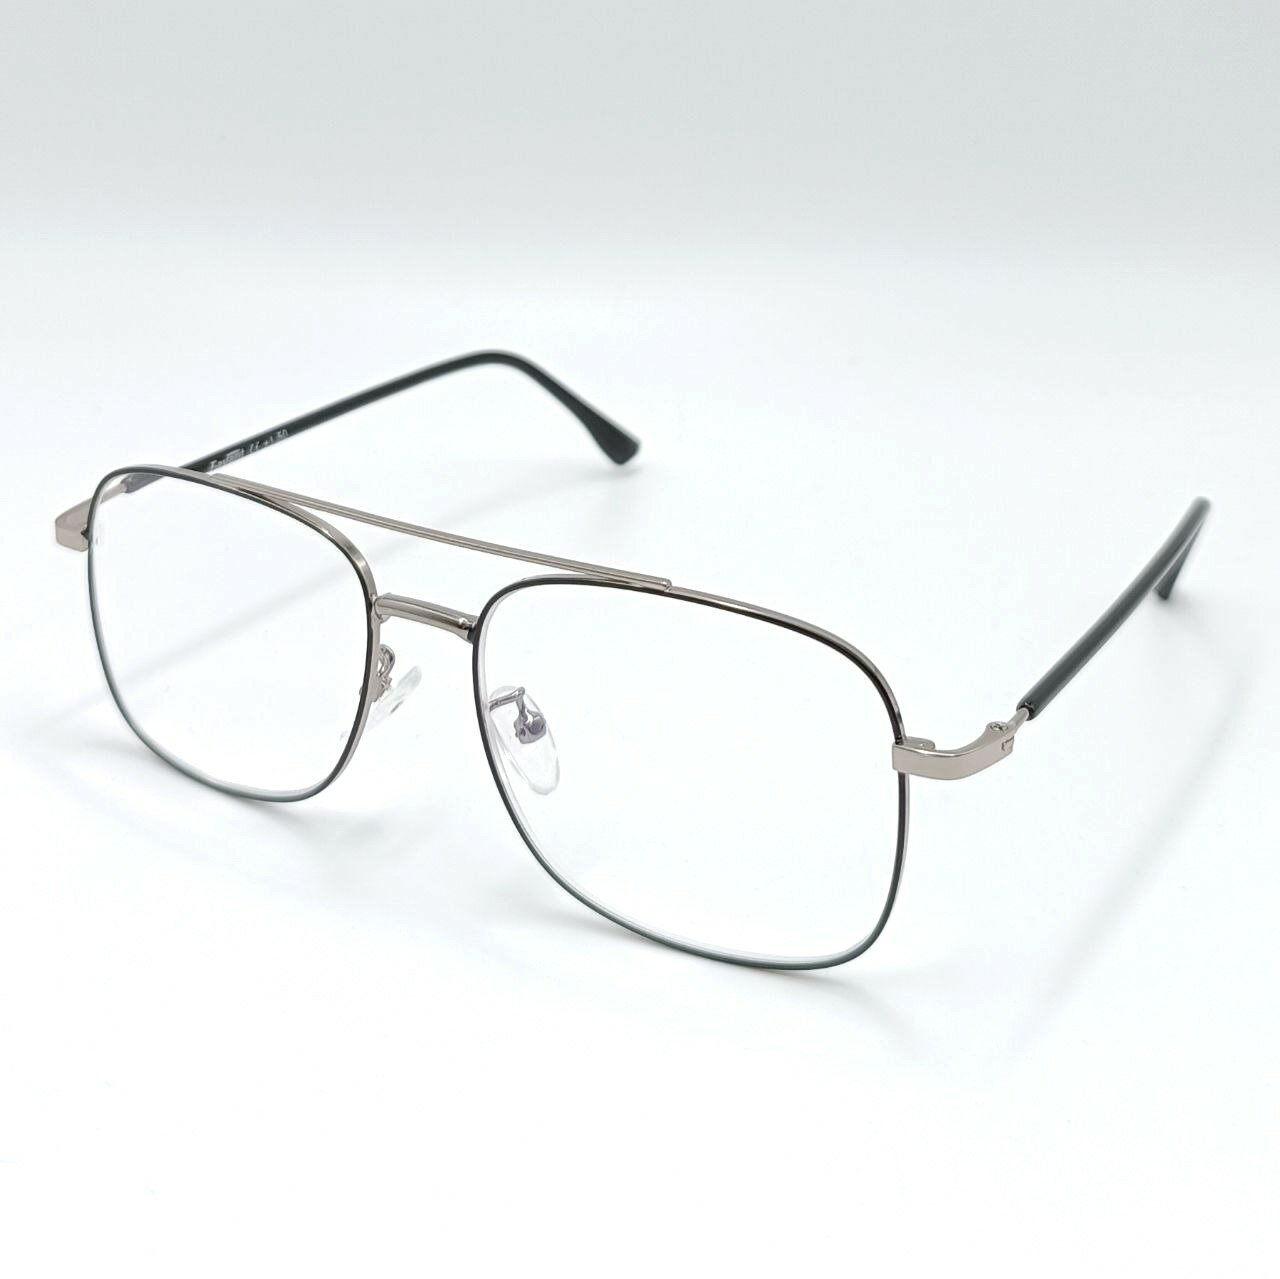 Favarit FVR 7700 - мужские очки с диоптриями -2.50